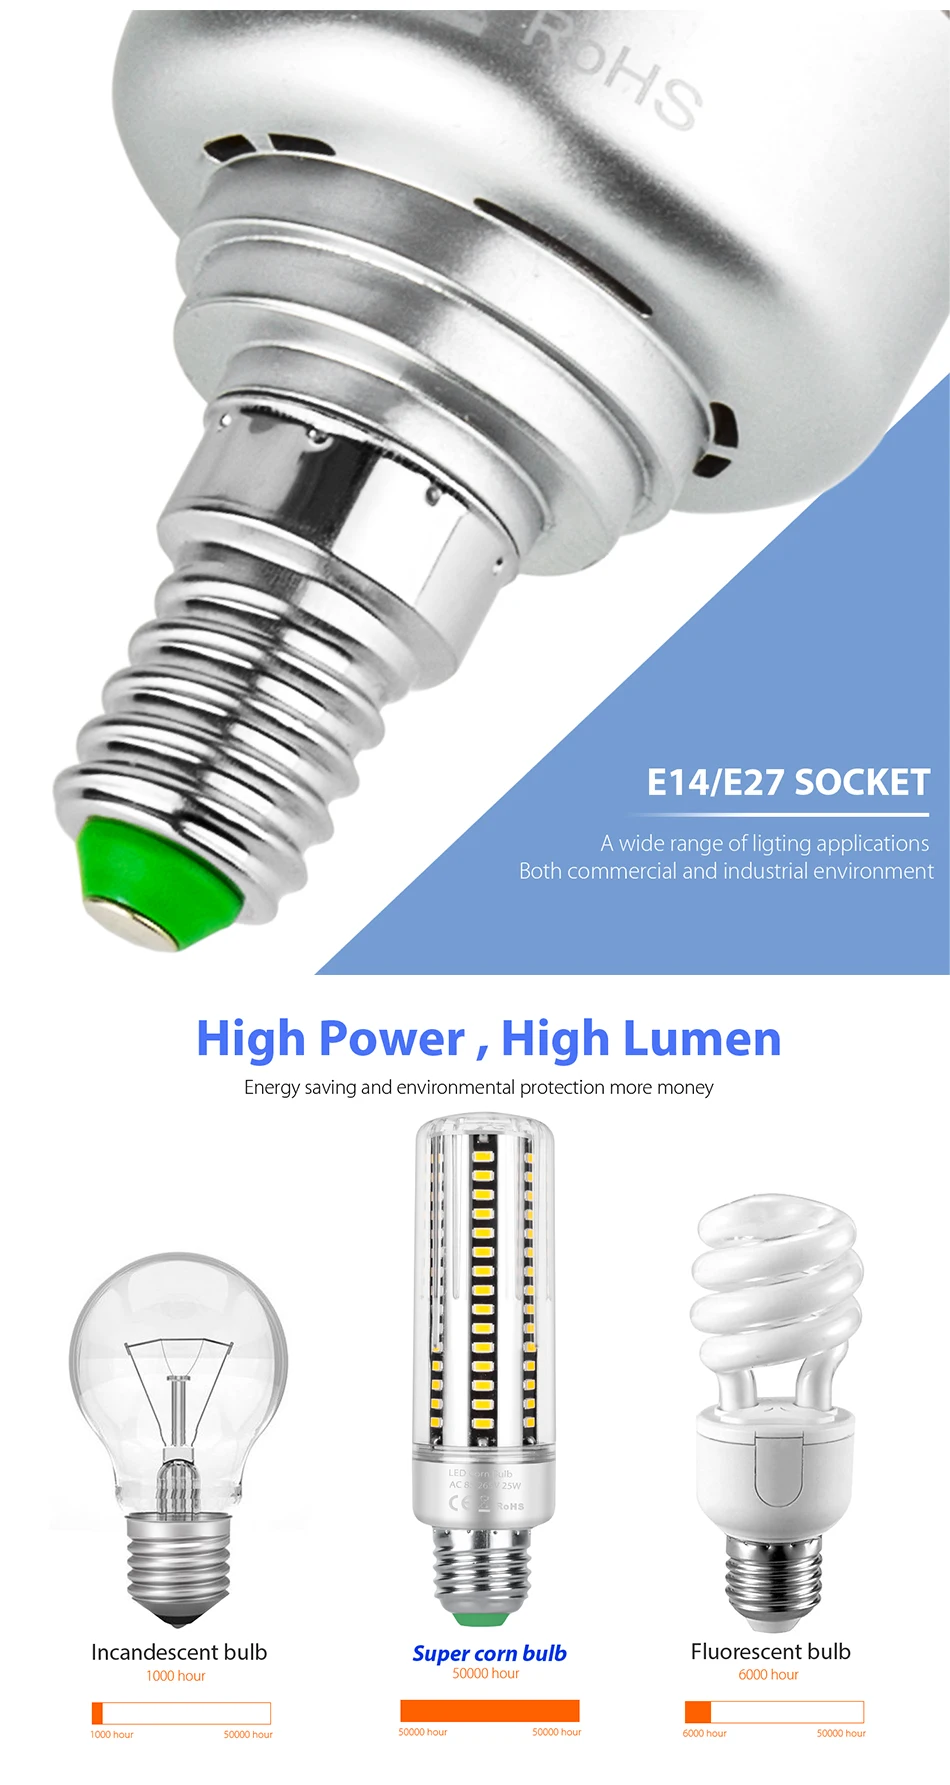 E27 Светодиодный светильник E14 без мерцания светодиодный SMD 5736 ультра яркий светодиодный светильник 5 Вт 7 Вт 9 Вт 12 Вт 15 Вт 20 Вт 25 Вт алюминиевый светильник лампа AC85-265V